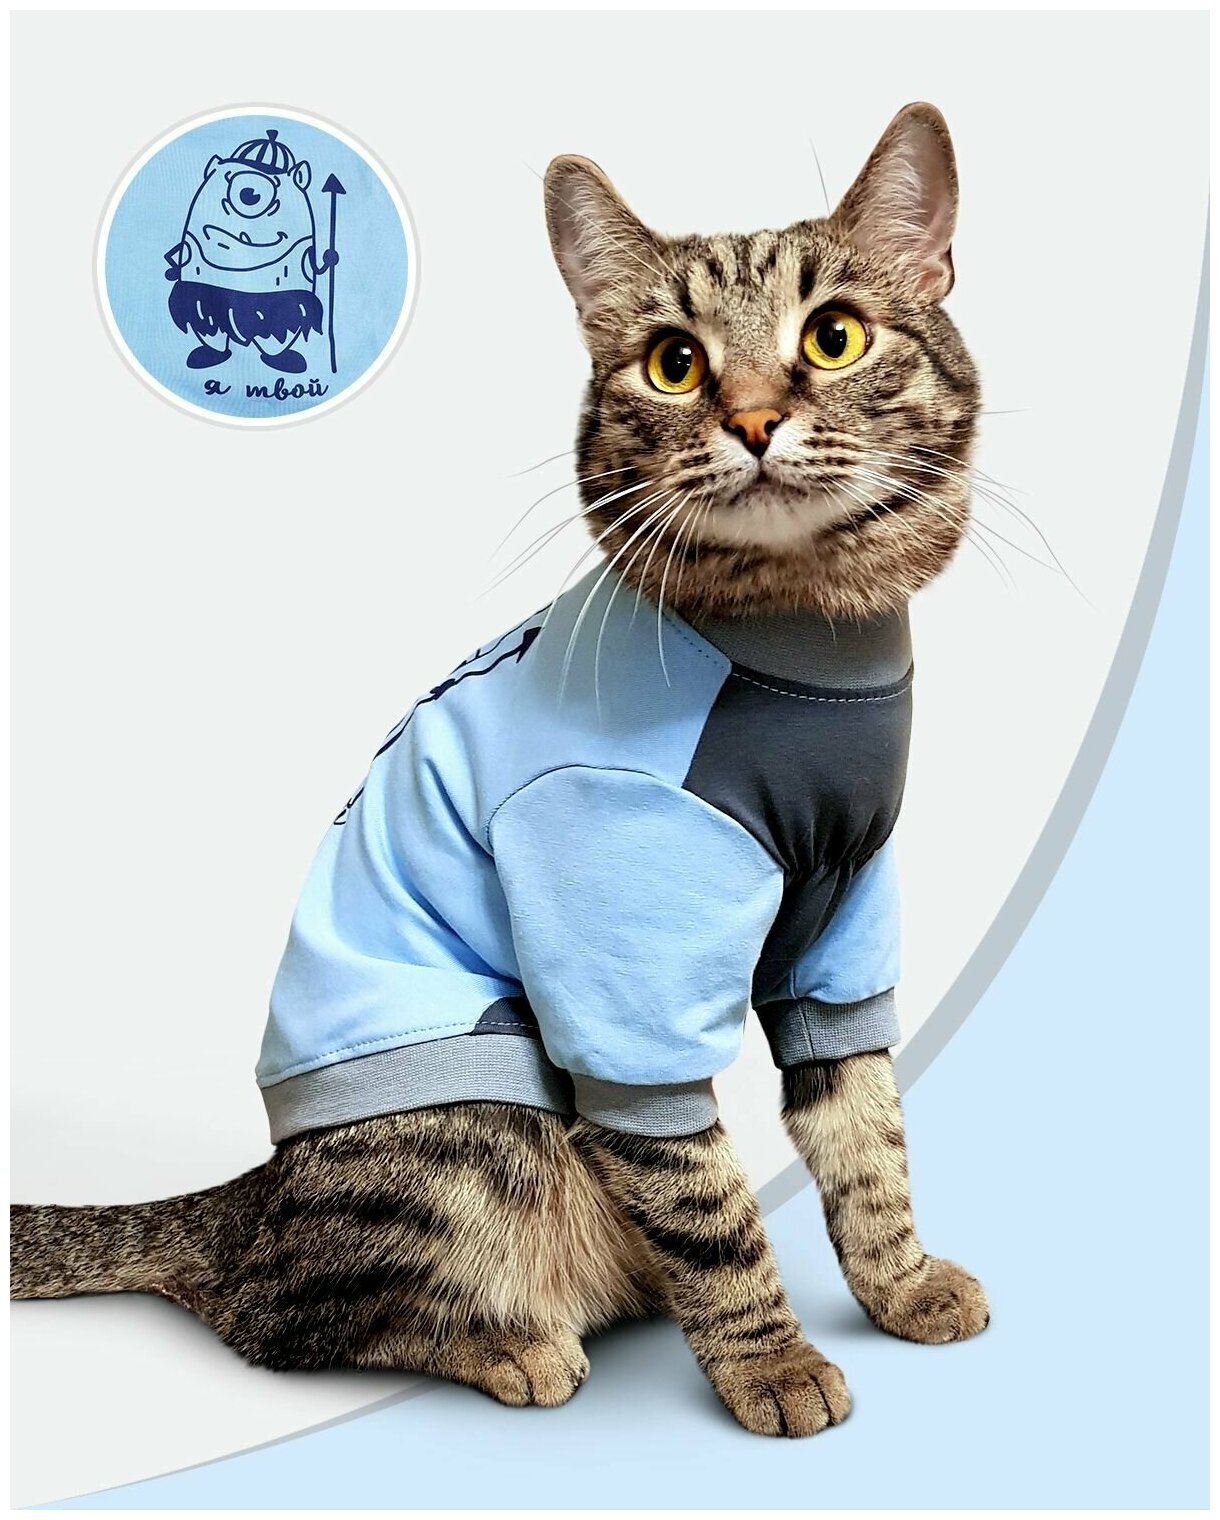 Футболка одежда для кошек "Я твой" размер М/ Майка для для котят/котов /сфинкс / сфинксов / Одежда собак мелких пород